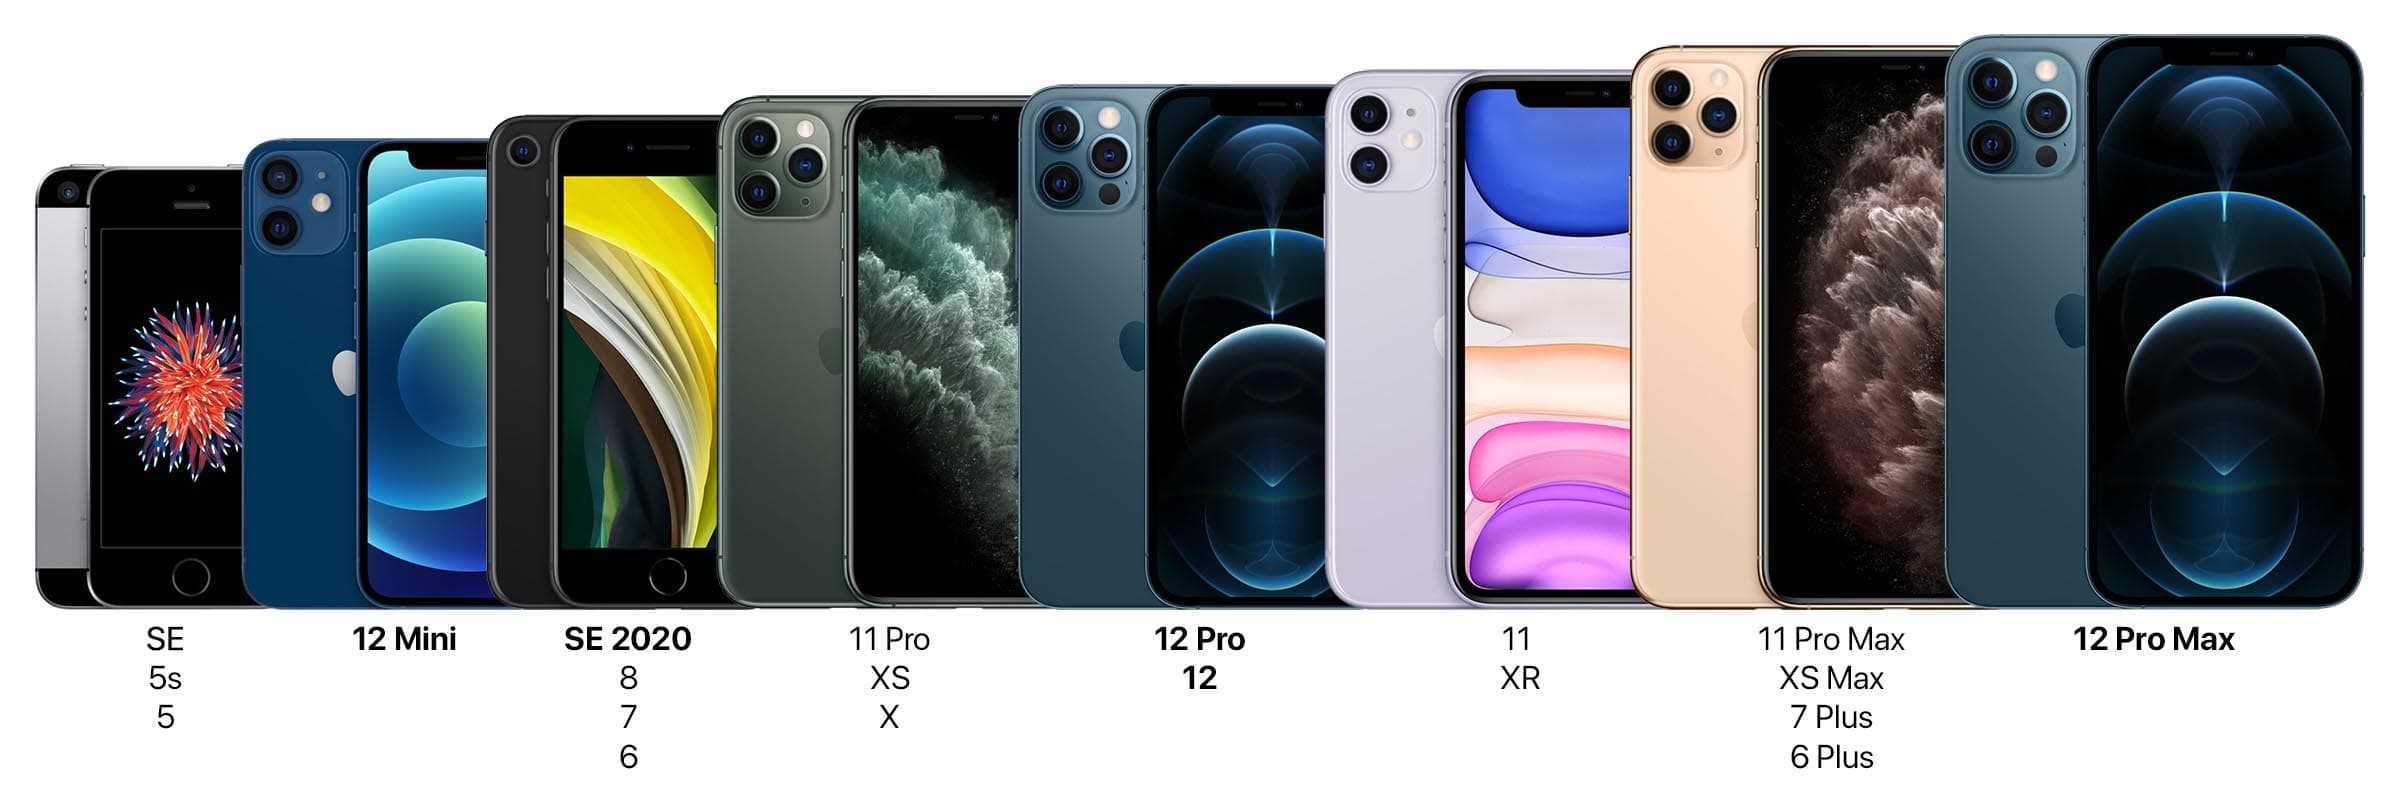 Iphone 11 pro max против 12 pro max: стоит ли того новая камера